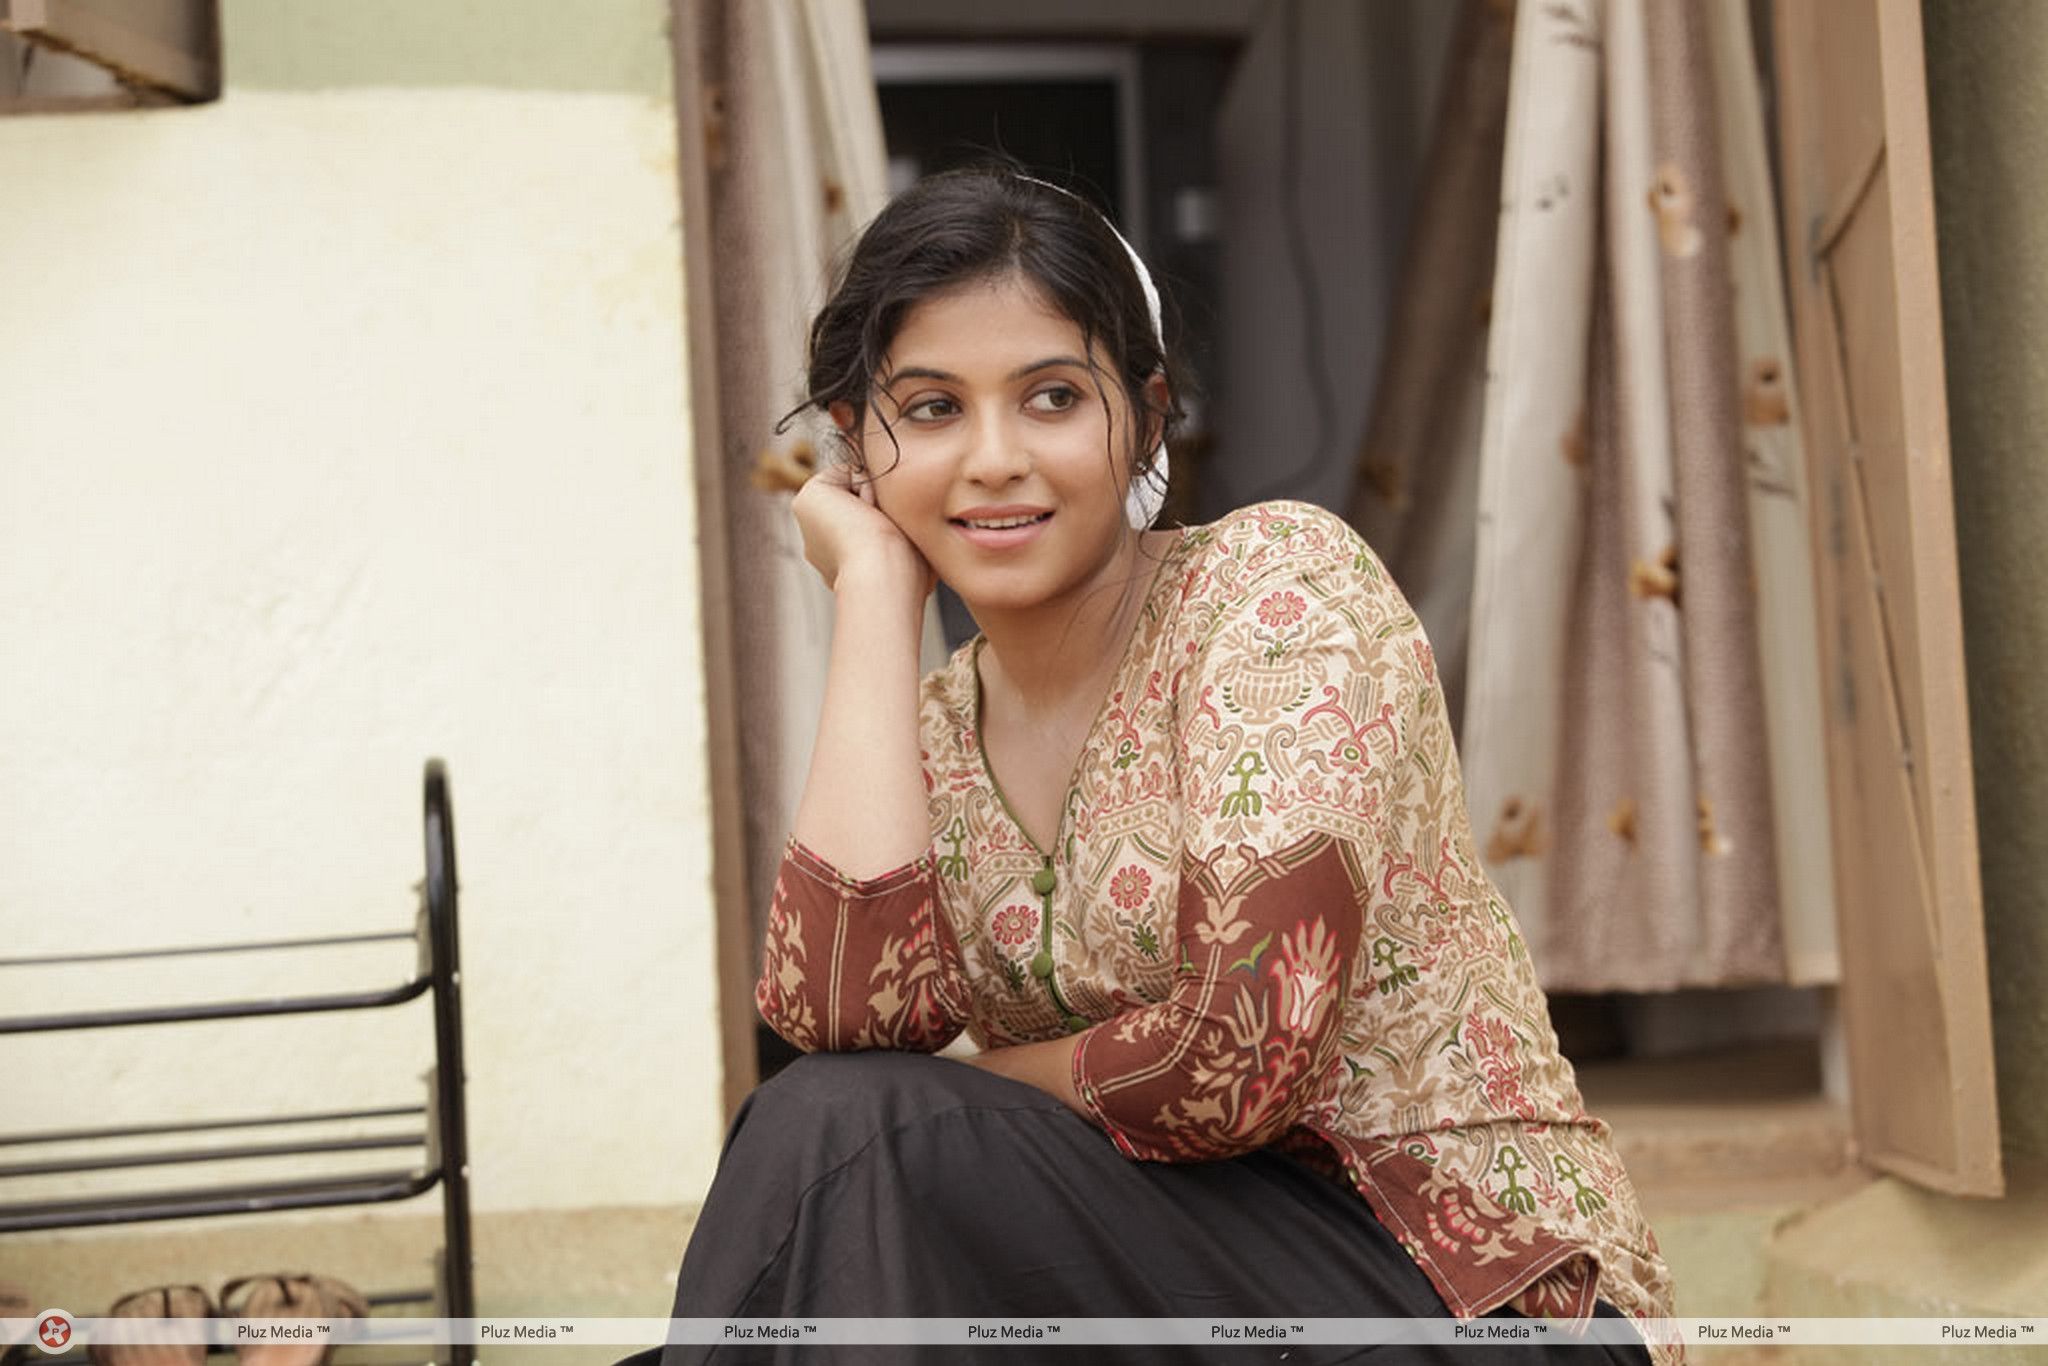 anjali actress latest photos